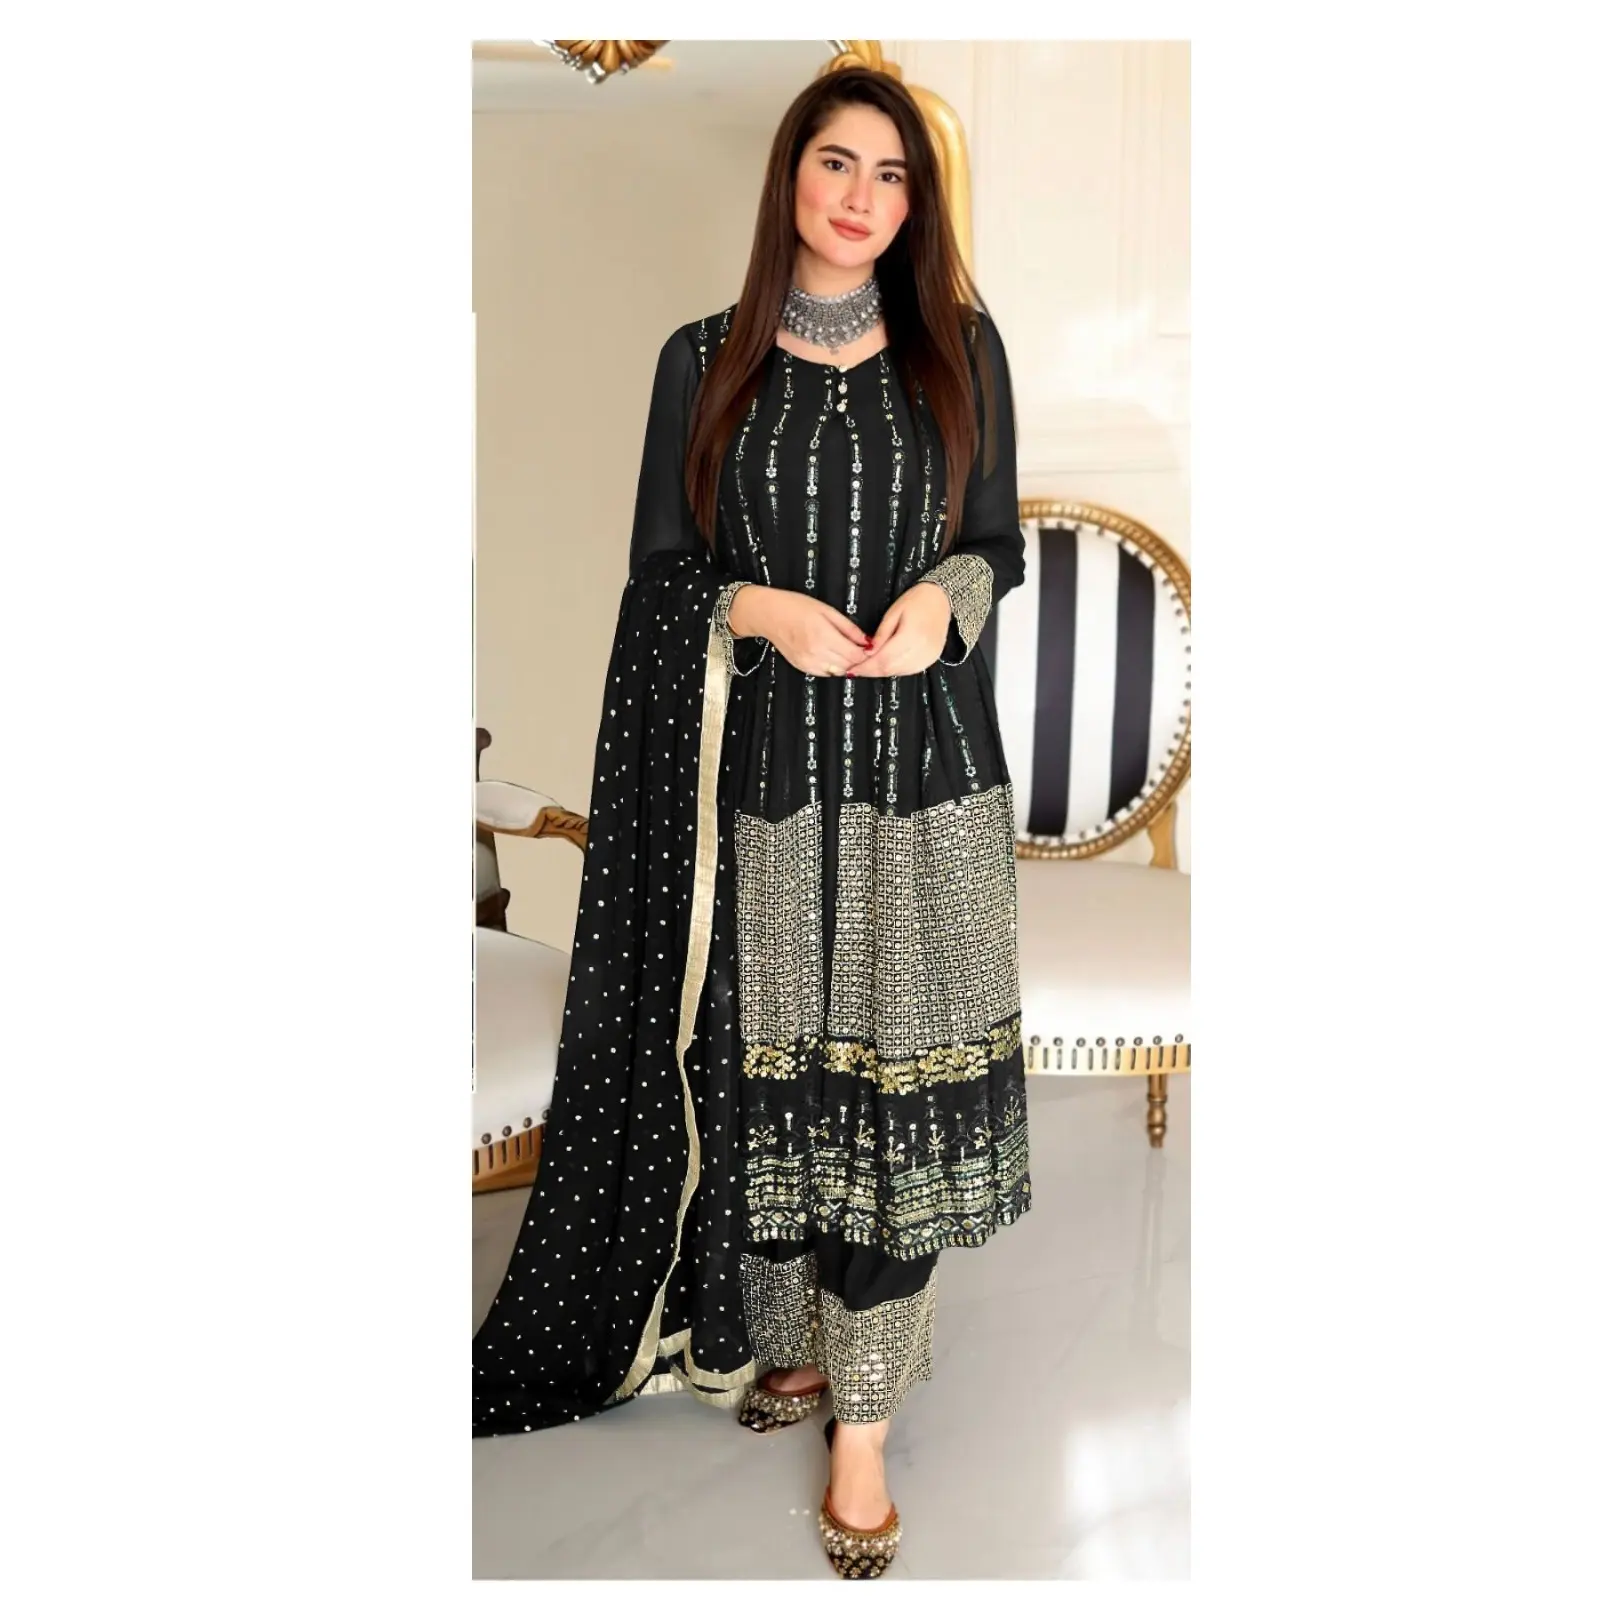 Nouvelle mode de vêtements de pelouse pour femmes robe d'été vêtements pour femmes costumes de pelouse pakistanais du fournisseur indien